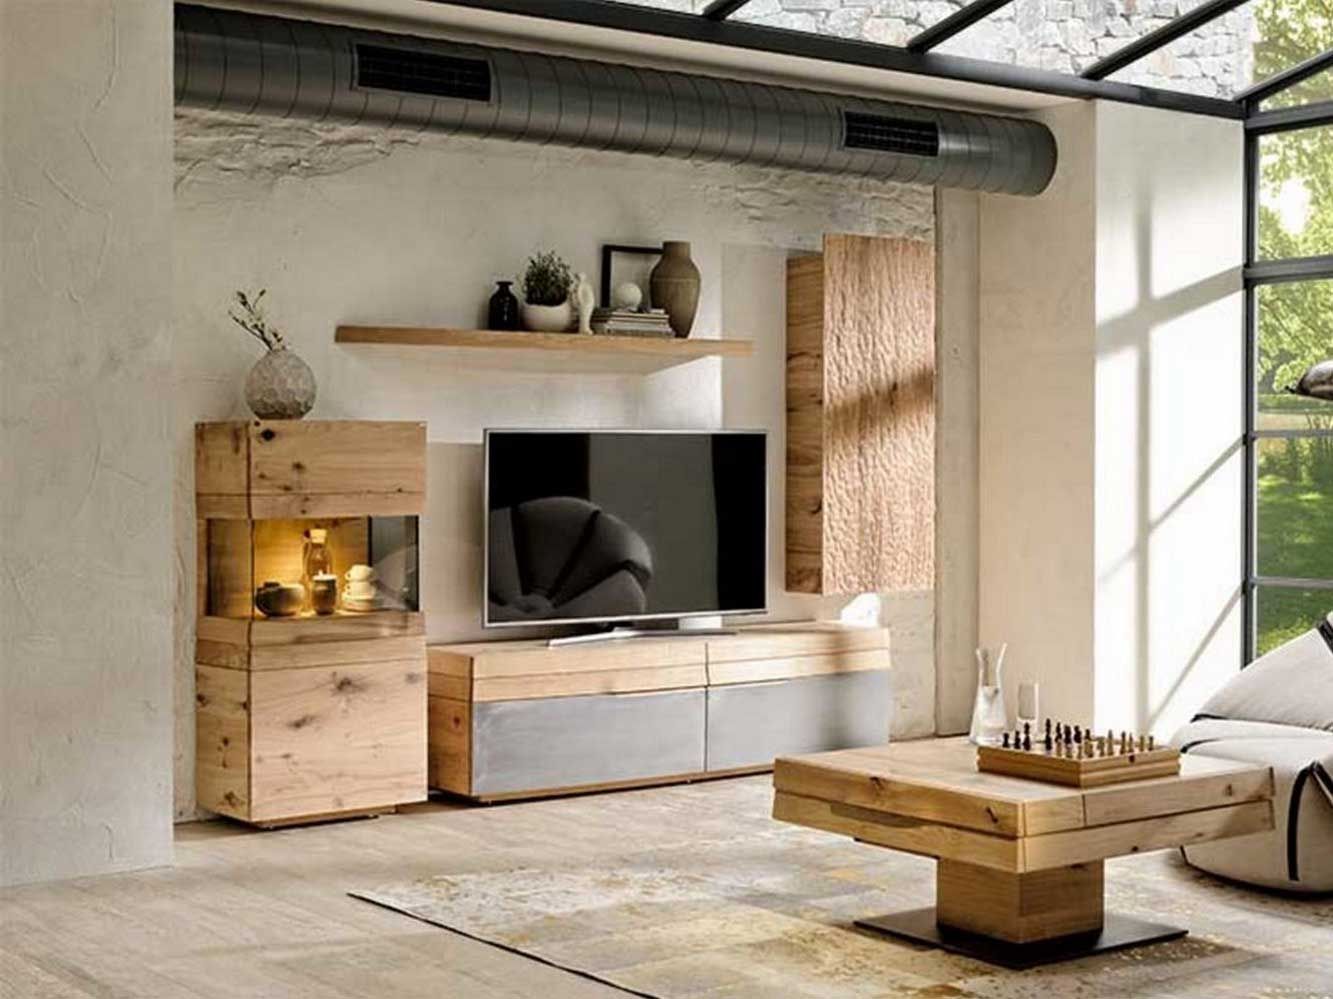 Ensemble haut de gamme de mobilier pour votre salon Imagine Outlet Salon moderne Bois Effet bois Table basse,table,extensible,relevable,transformable